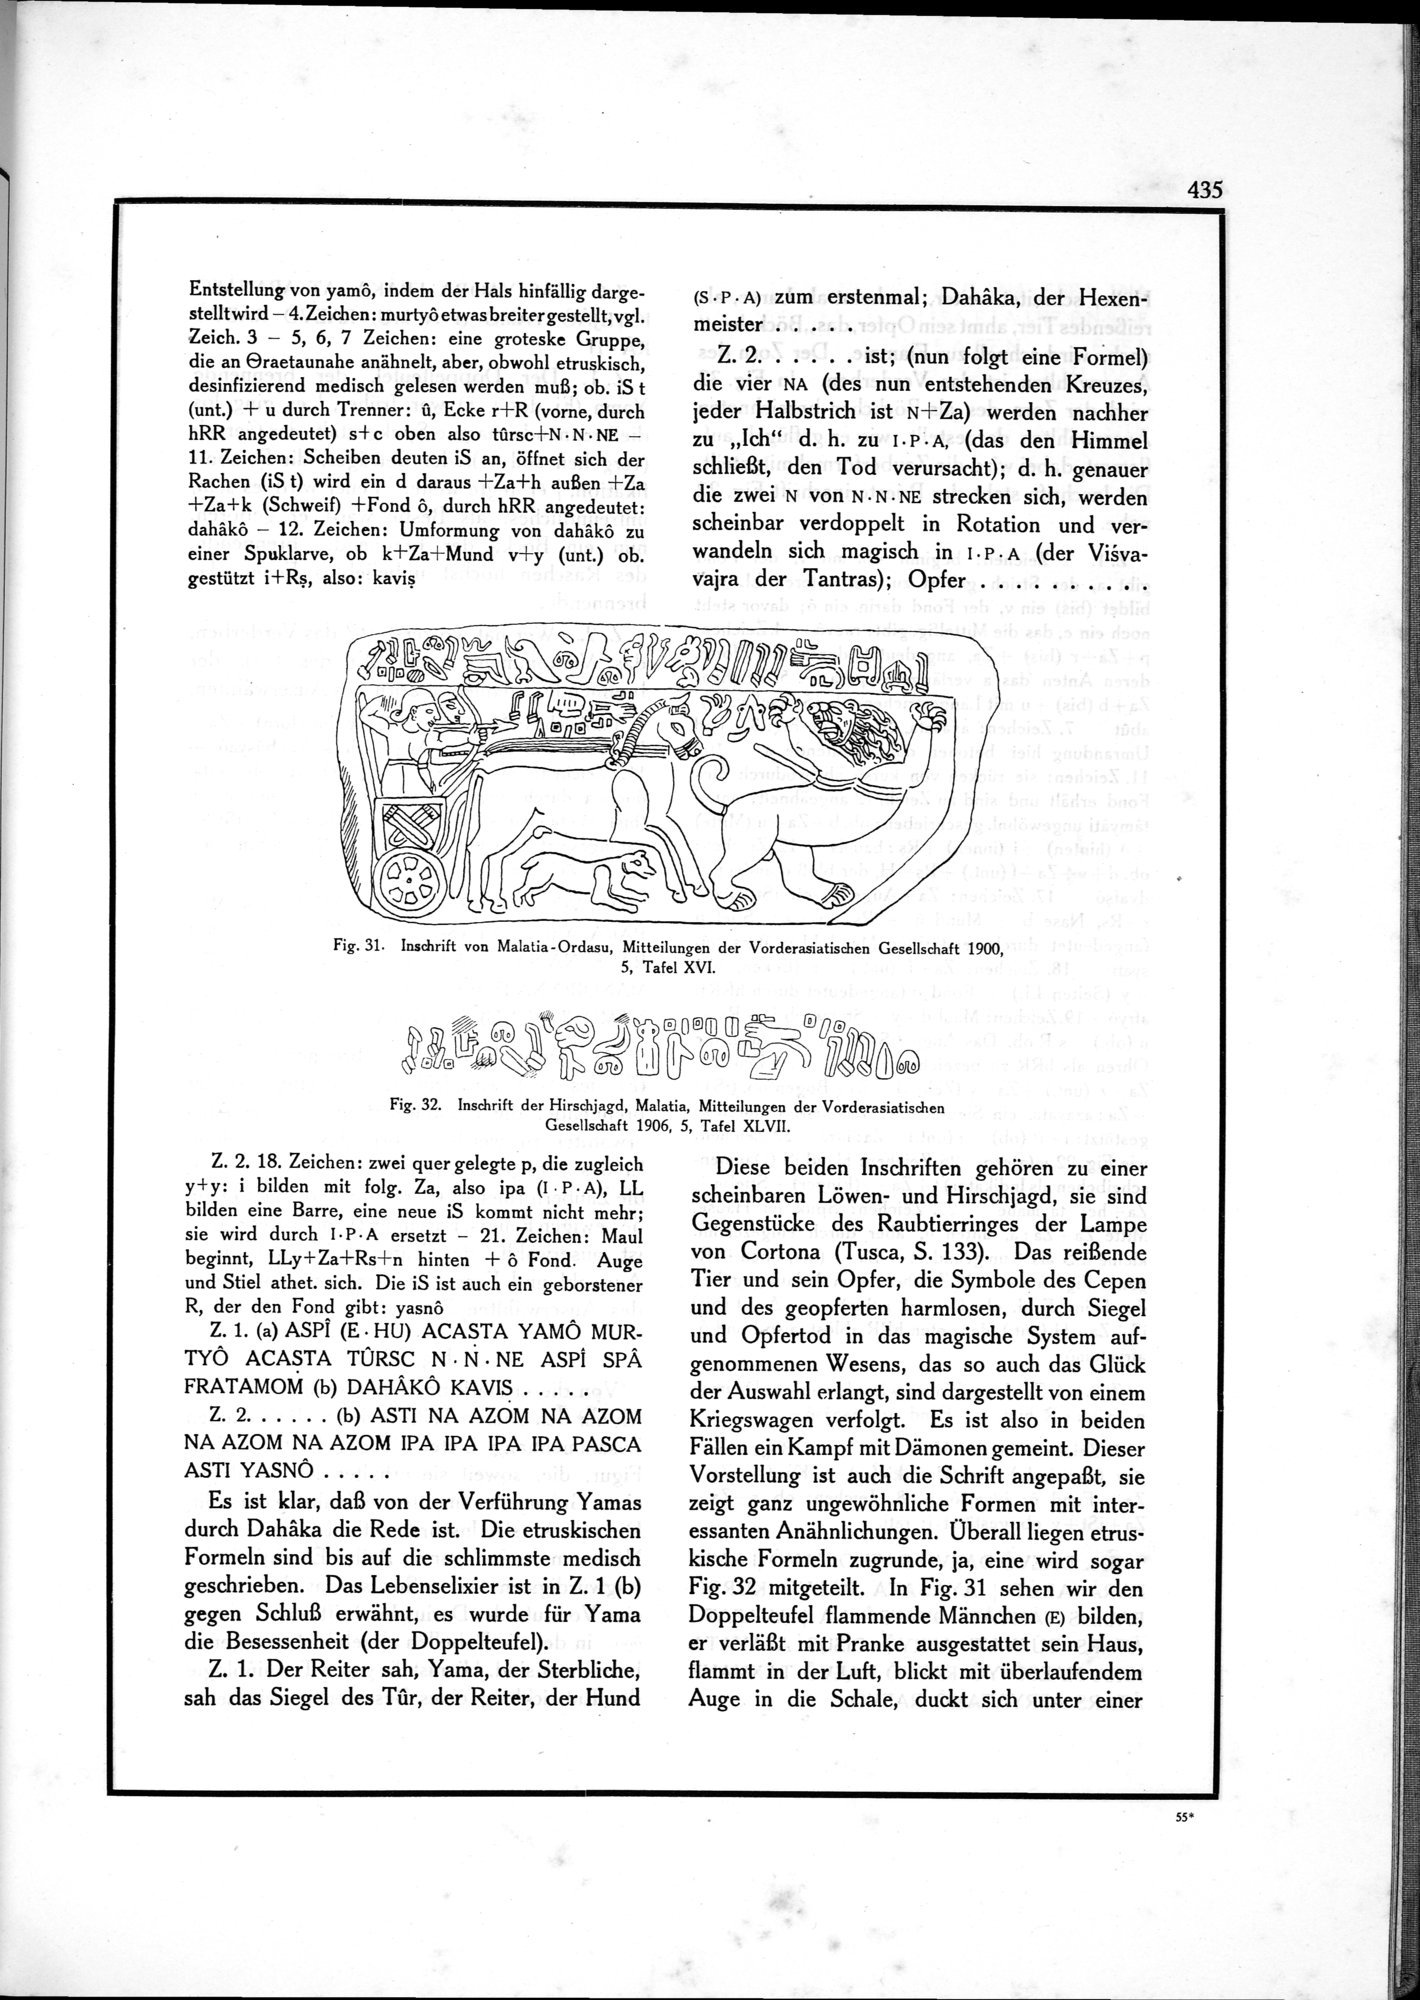 Die Teufel des Avesta und Ihre Beziehungen zur Ikonographie des Buddhismus Zentral-Asiens : vol.1 / Page 439 (Grayscale High Resolution Image)